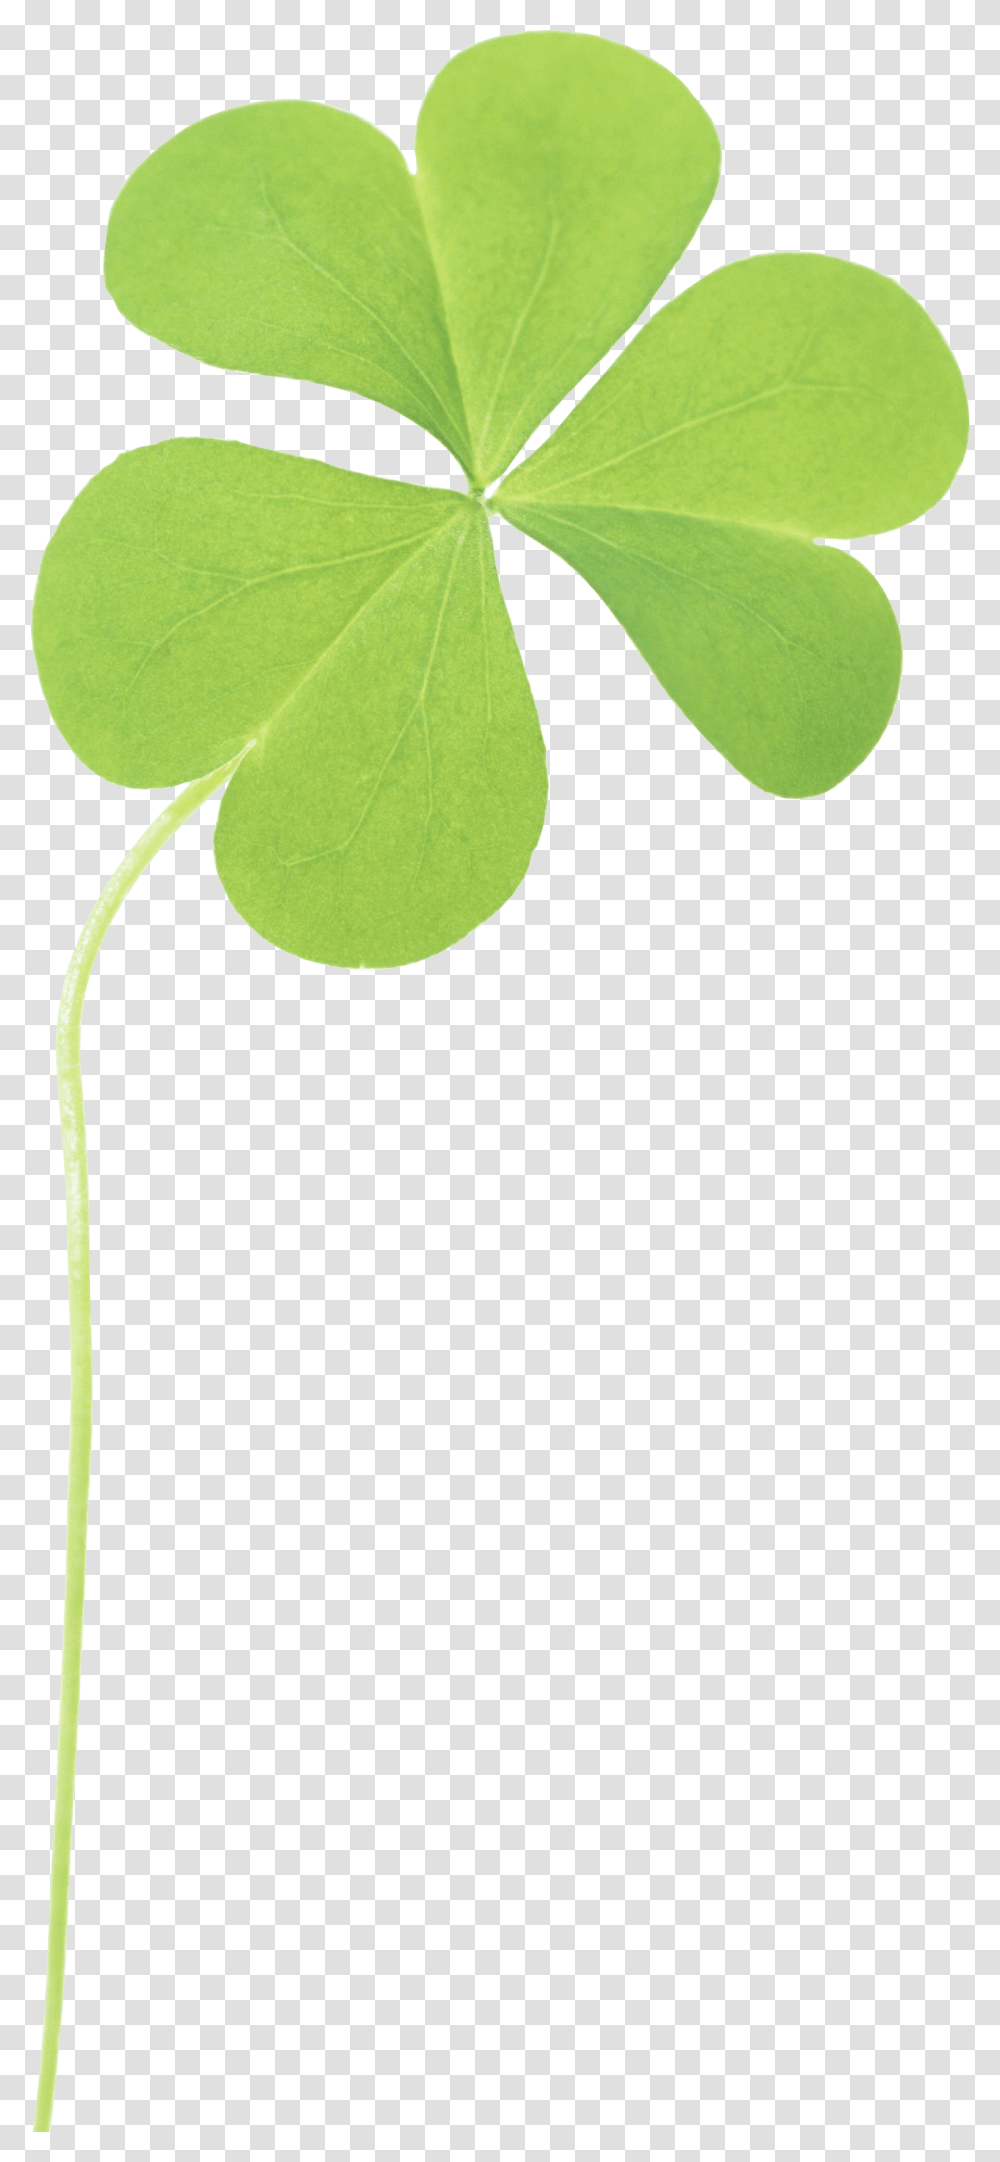 Clover Three Light Clip Arts Trebol De 3 Hojas, Leaf, Plant, Green, Tree Transparent Png